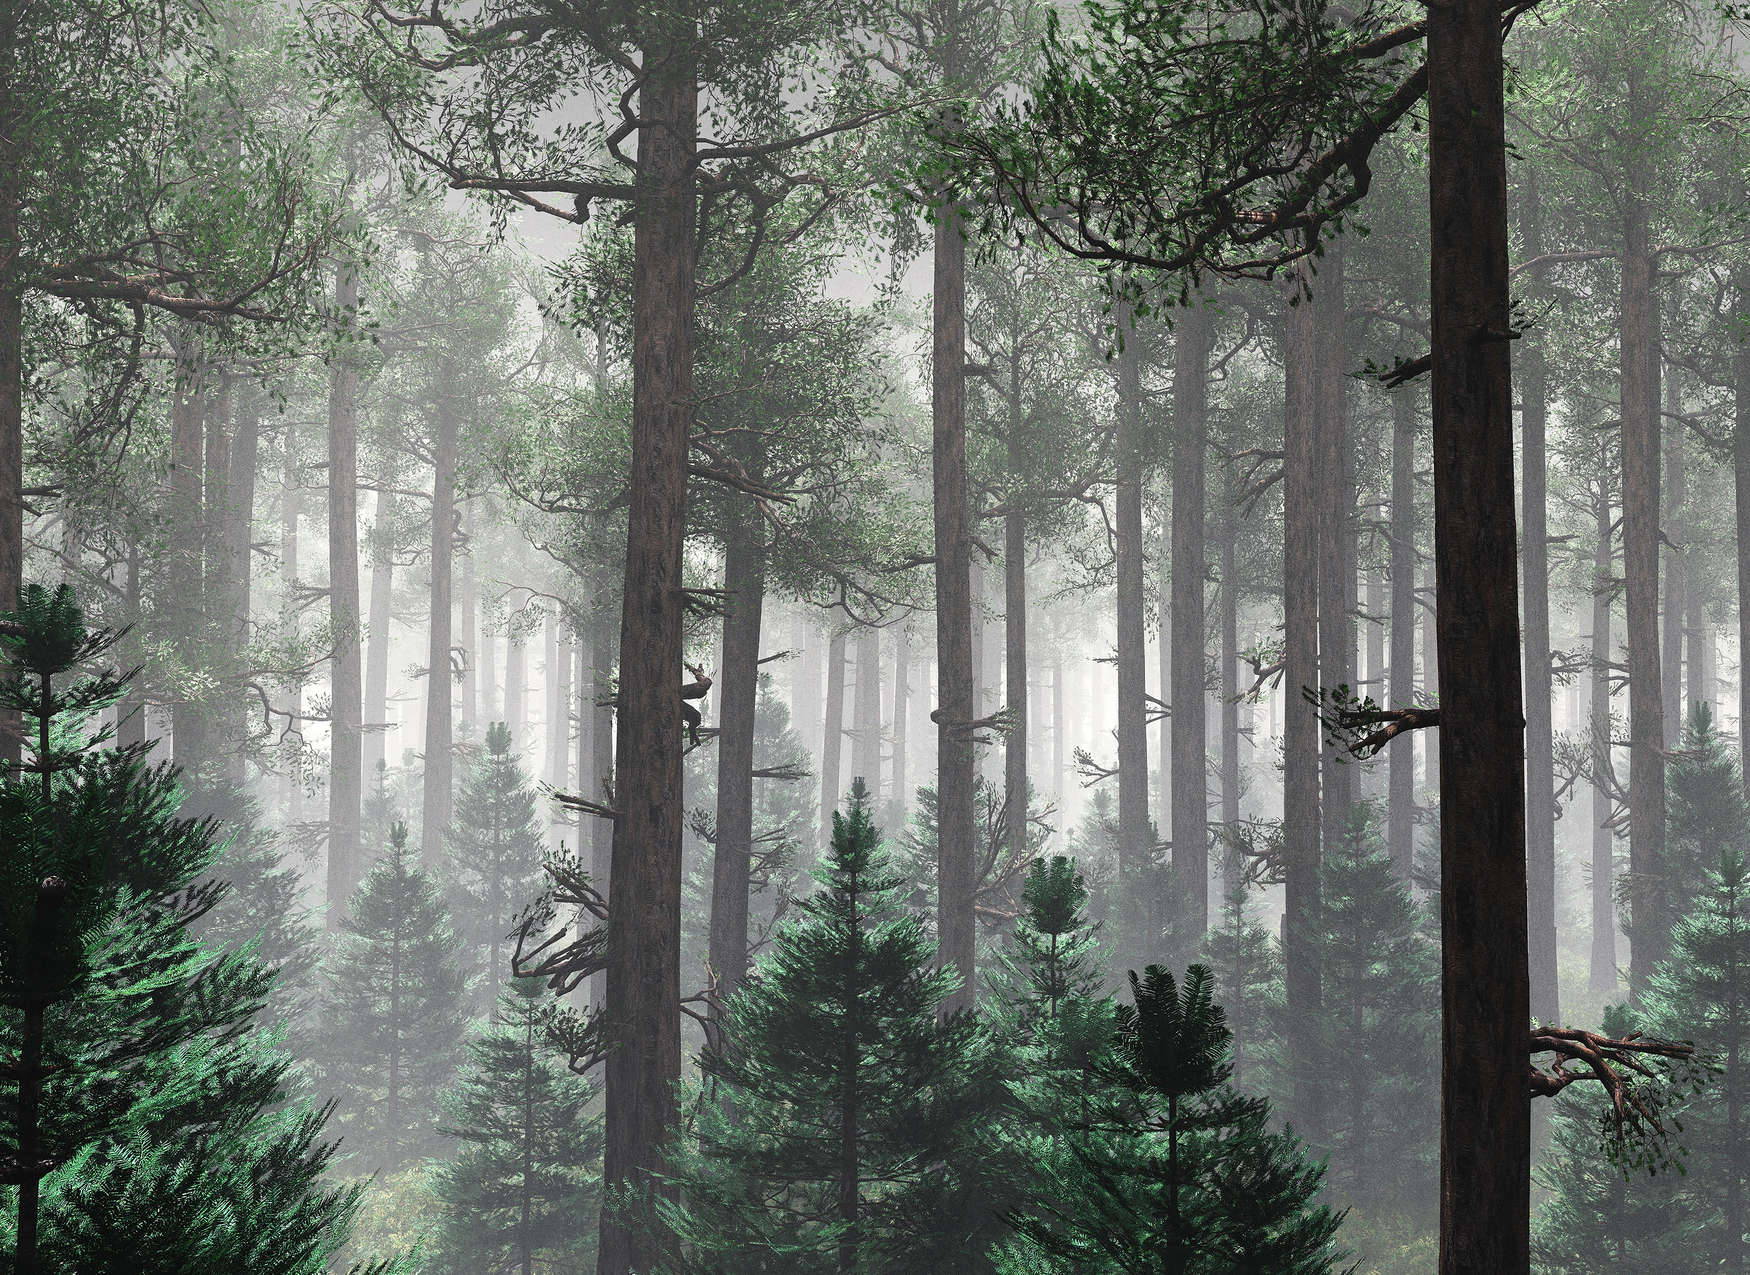             Fotomural Bosque en la niebla con grandes árboles - Verde, Marrón, Gris
        